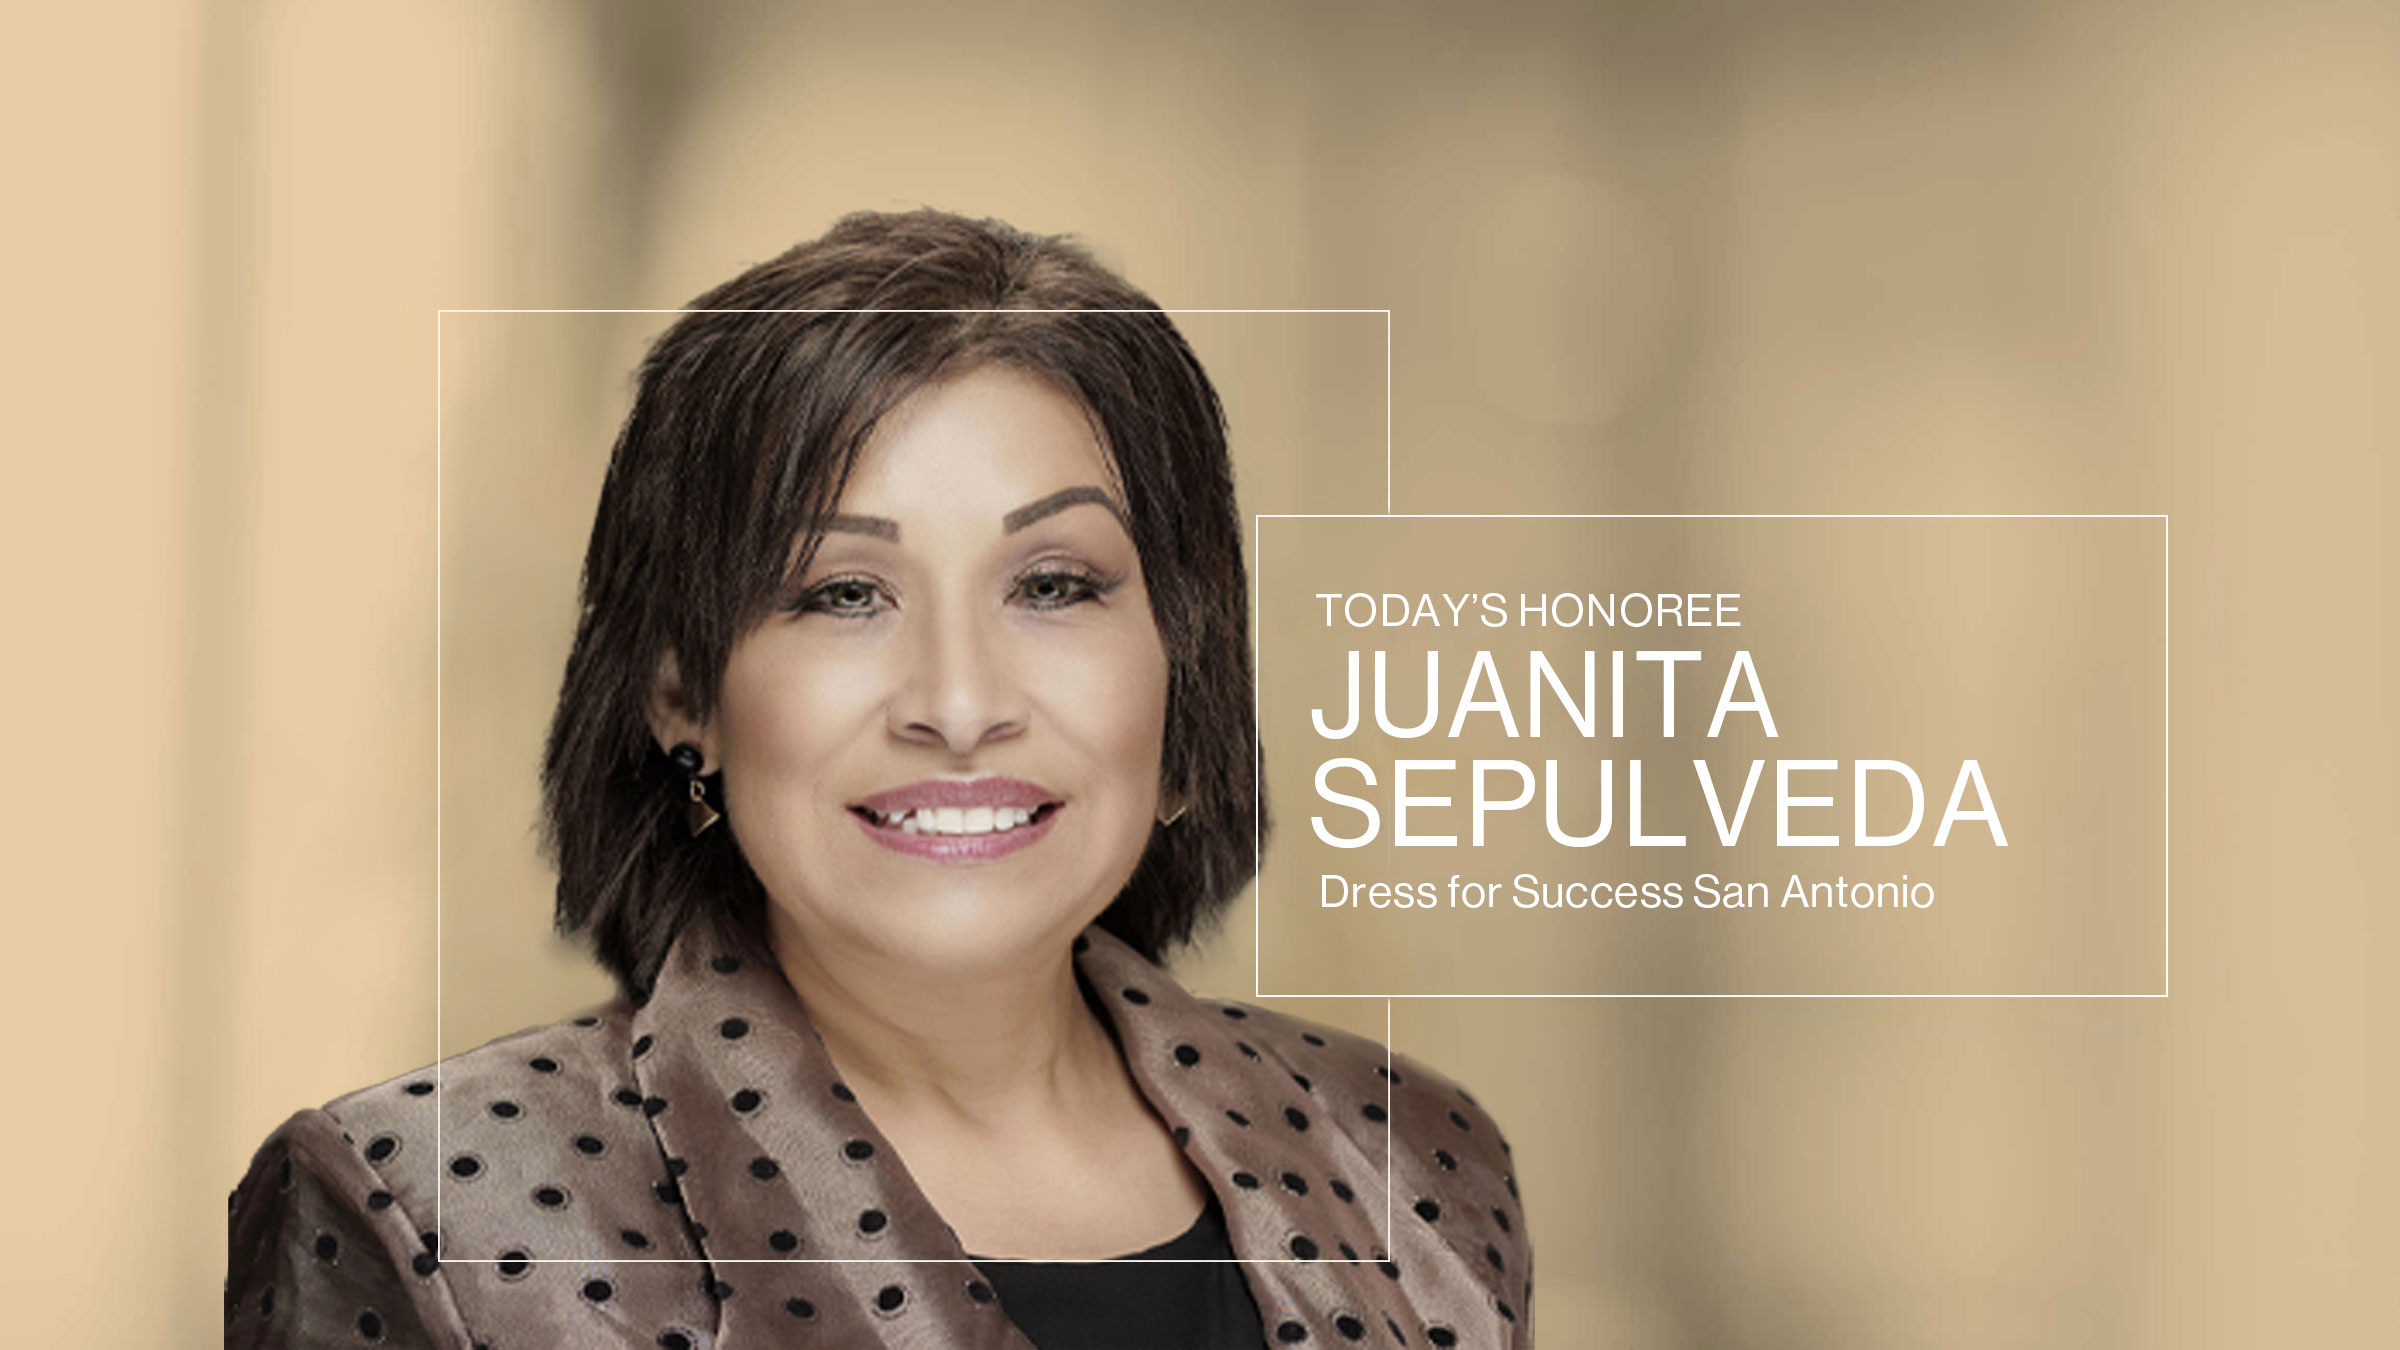 Juanita Sepulveda